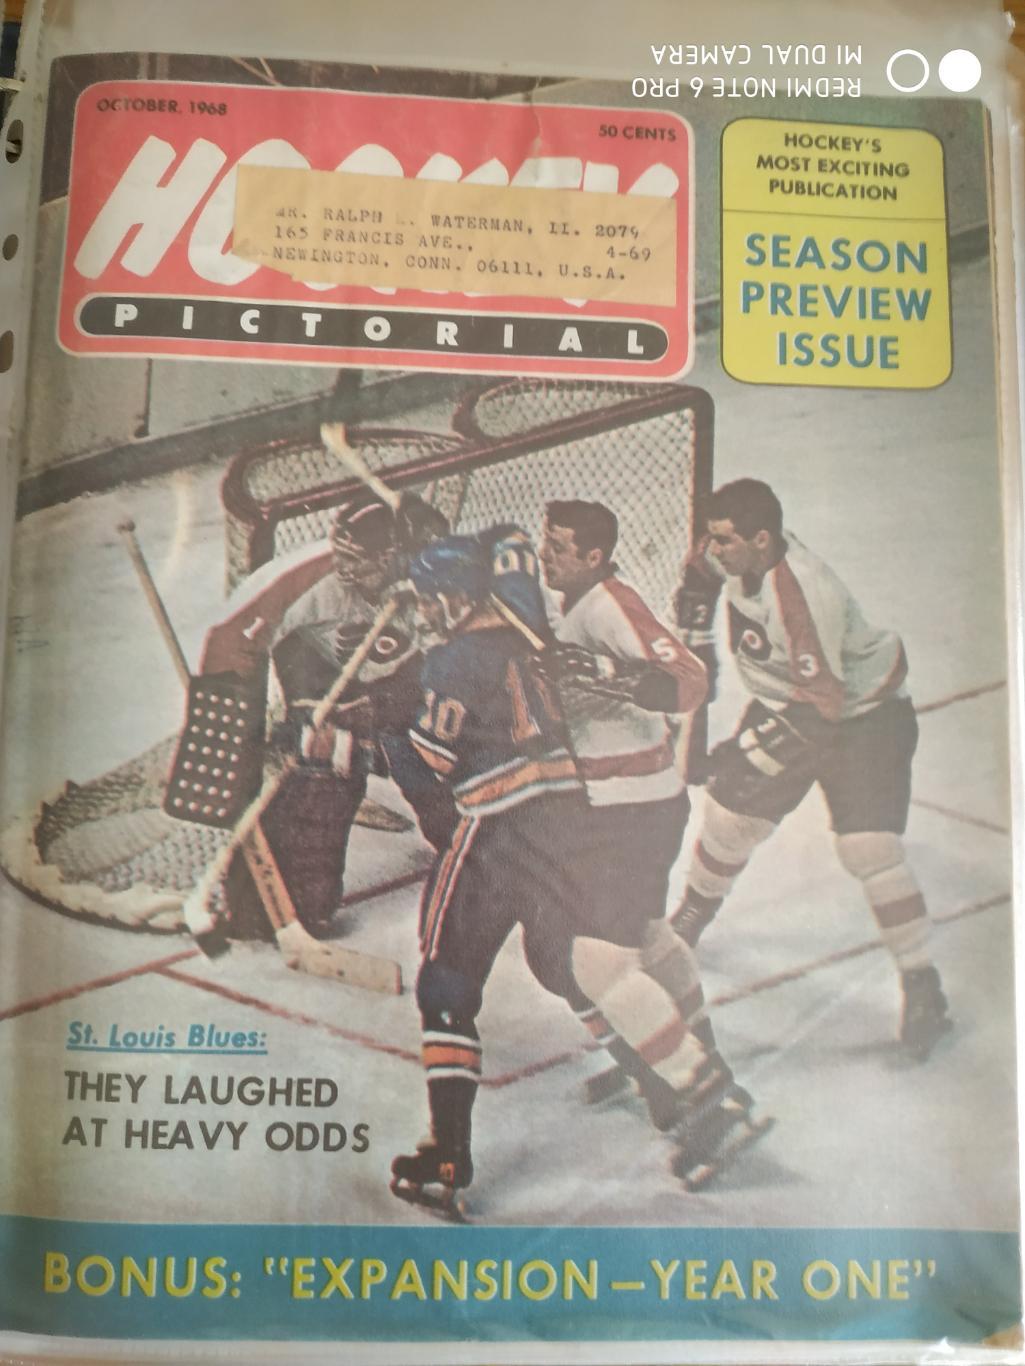 ХОККЕЙ ЖУРНАЛ ЕЖЕМЕСЯЧНИК НХЛ NHL 1968 OCT HOCKEY PICTORIAL